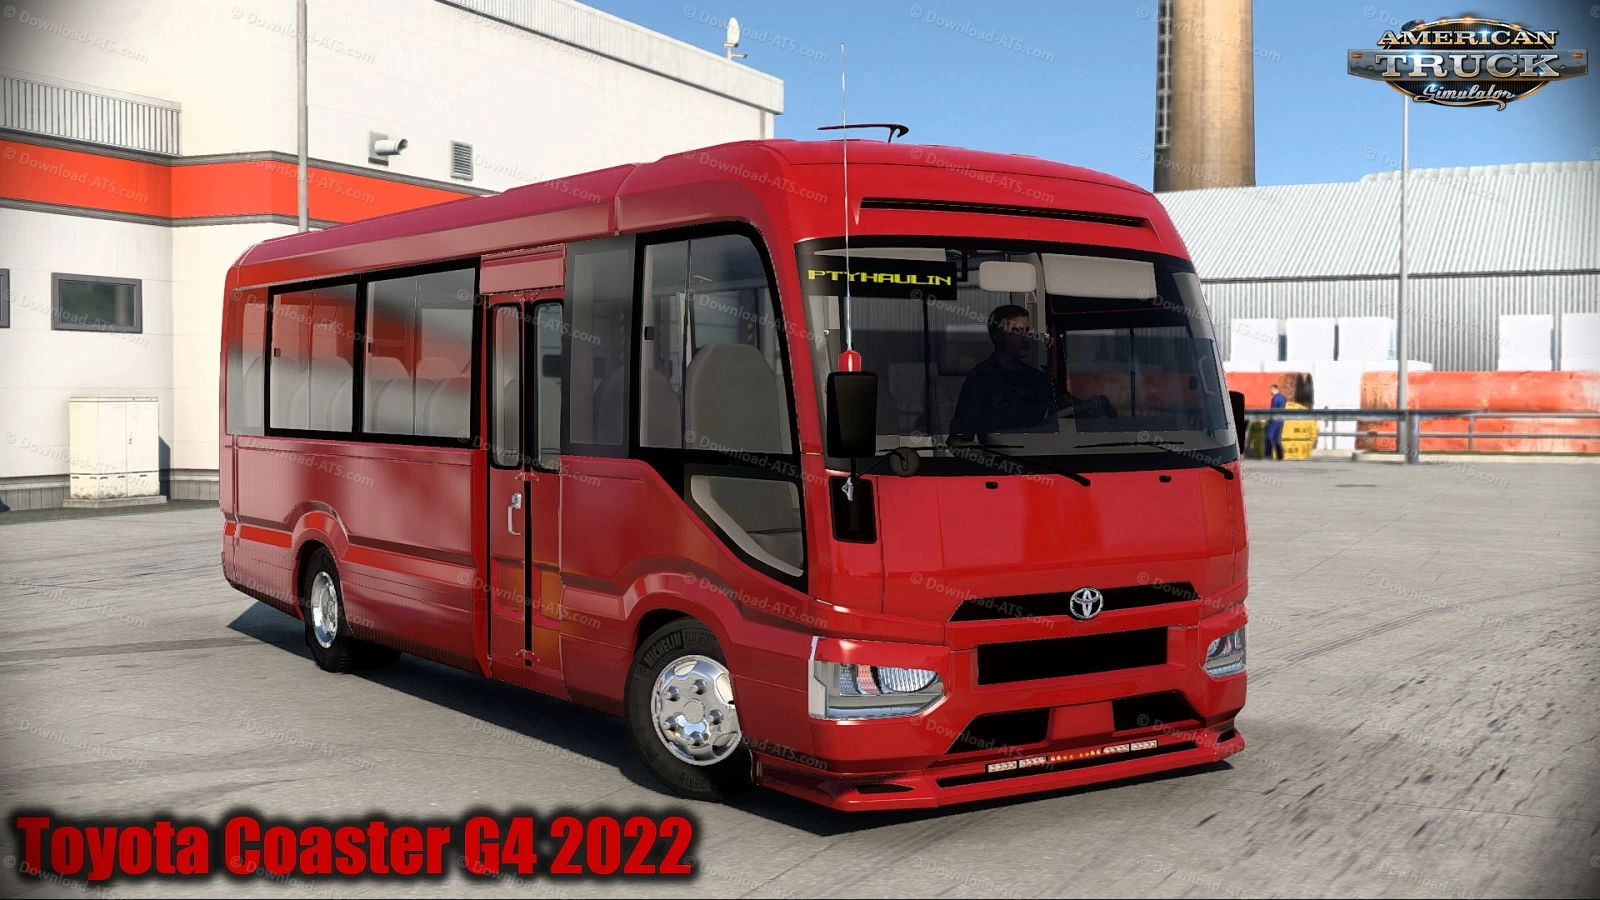 Toyota Coaster G4 2022 + Interior v1.0 (1.43.x) for ATS